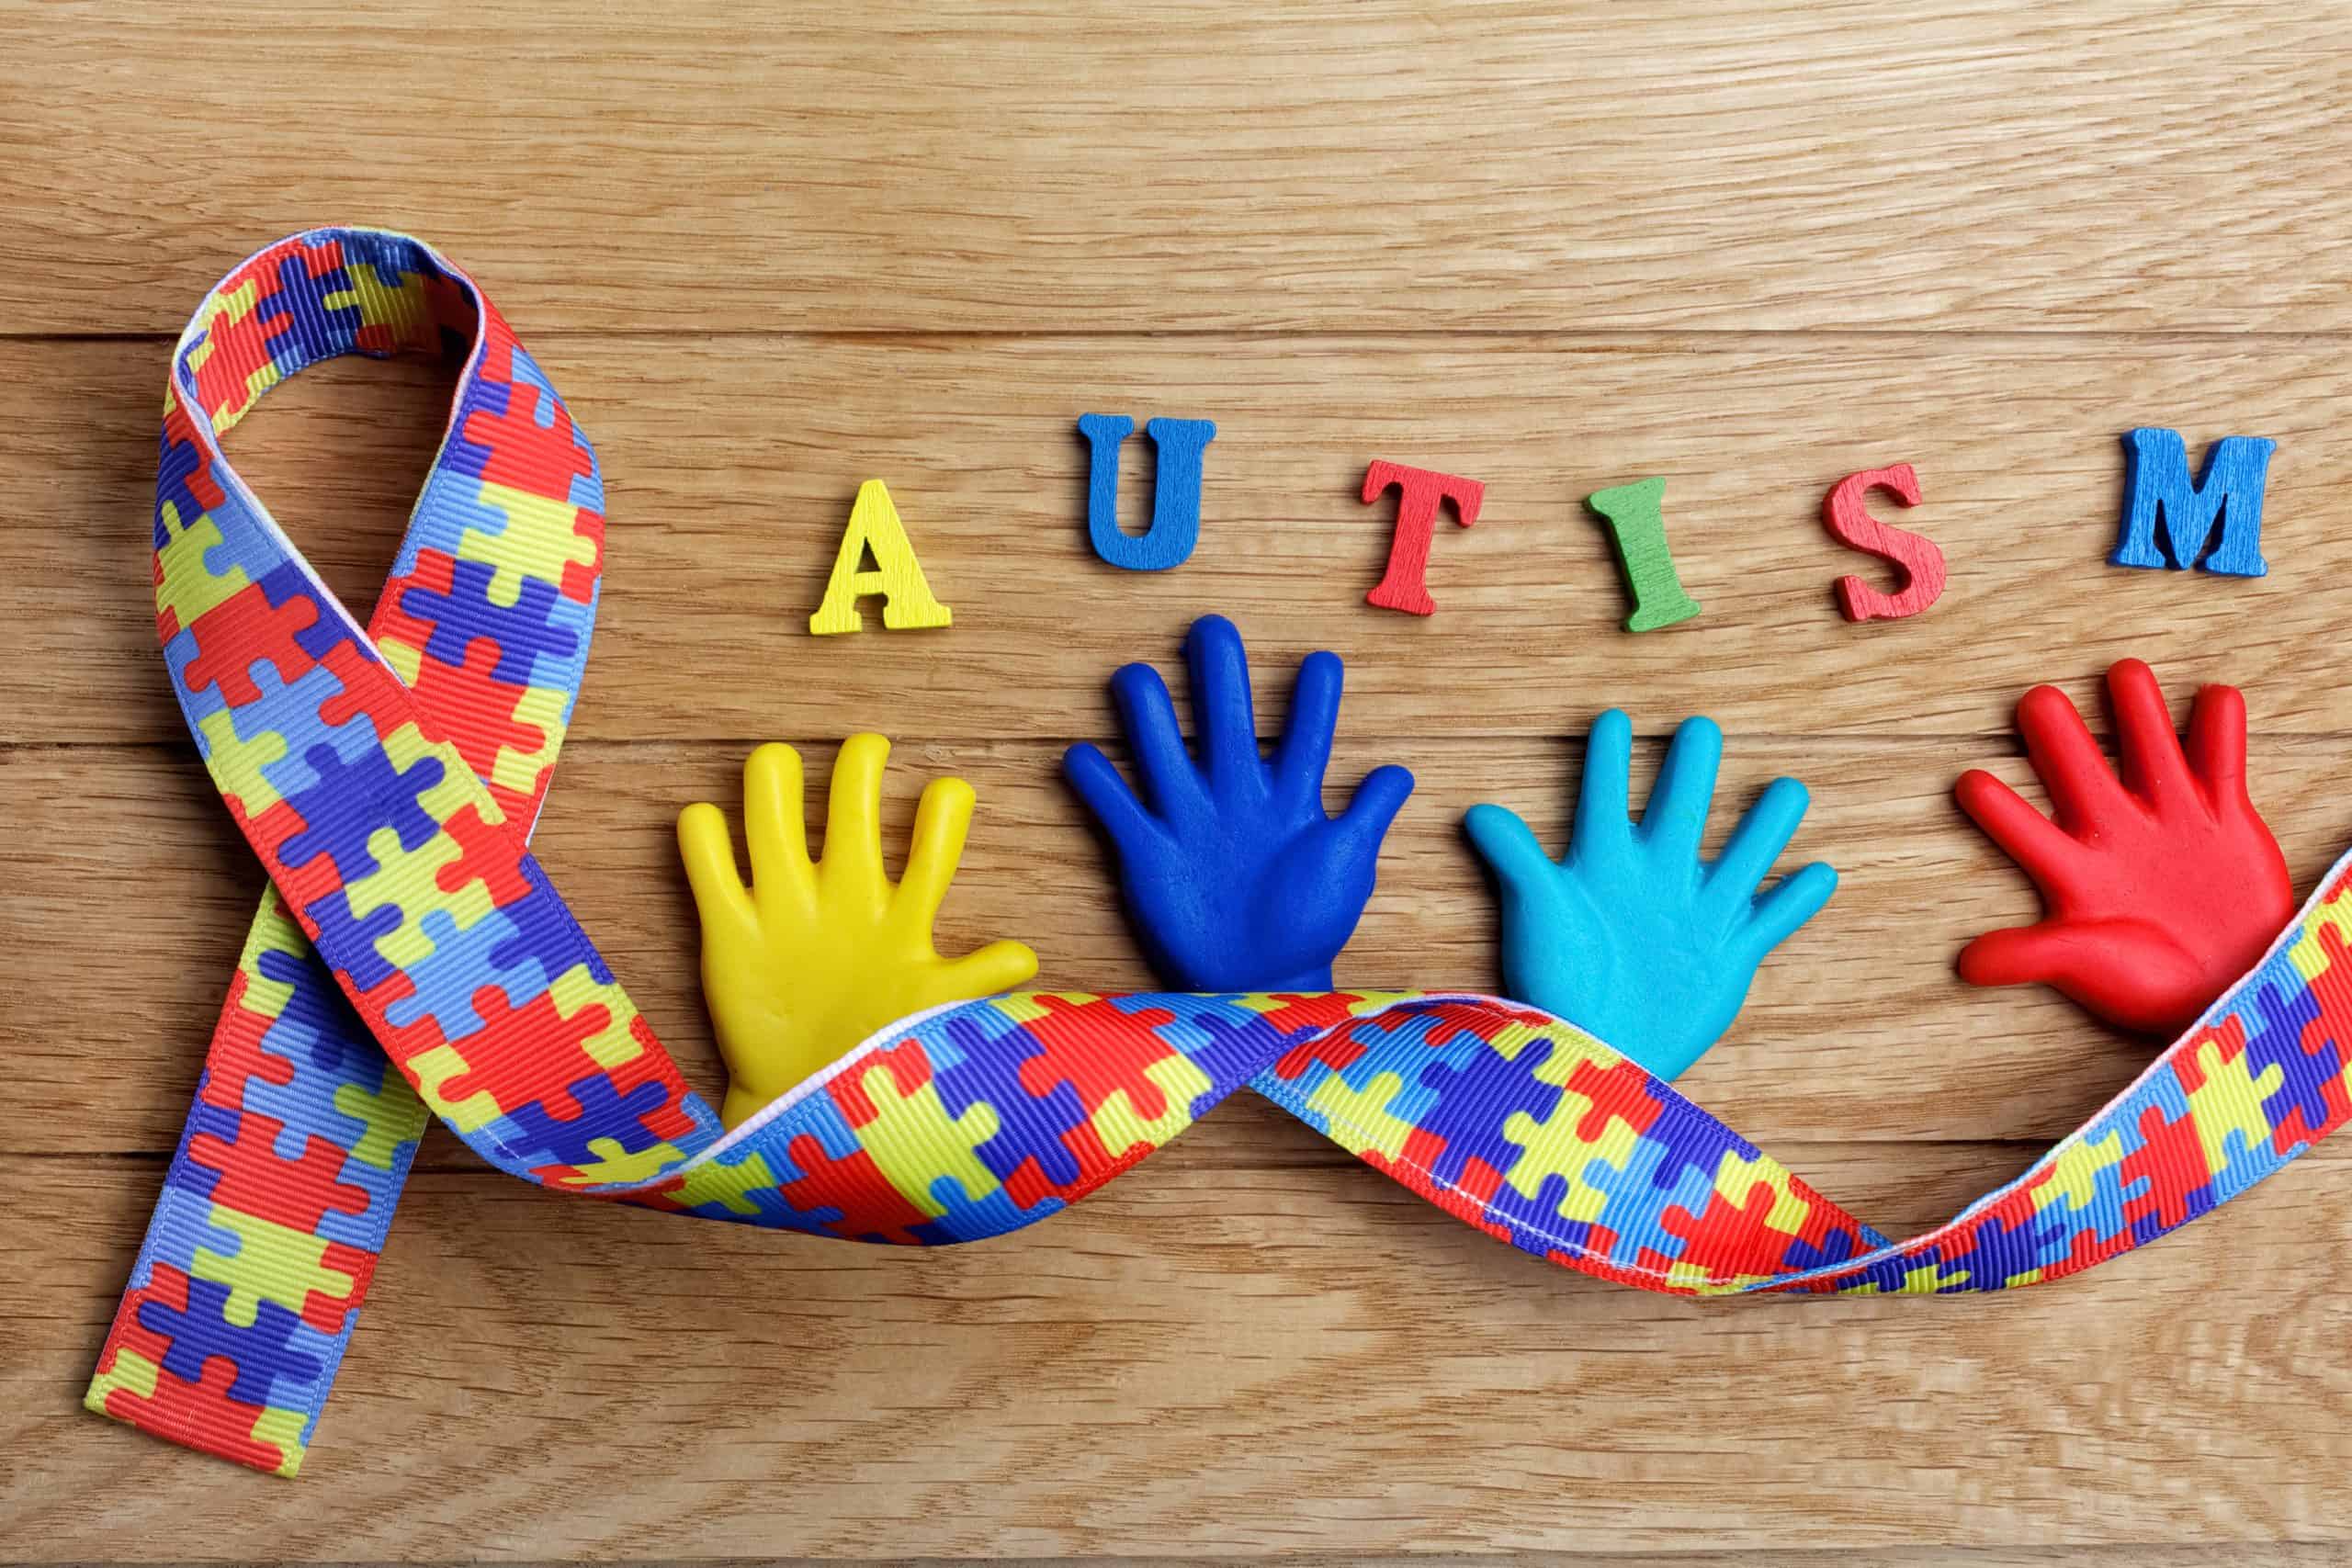 Autizam kod djece i odraslih - što je, kako nastaje i koji su simptomi - Arz.hr